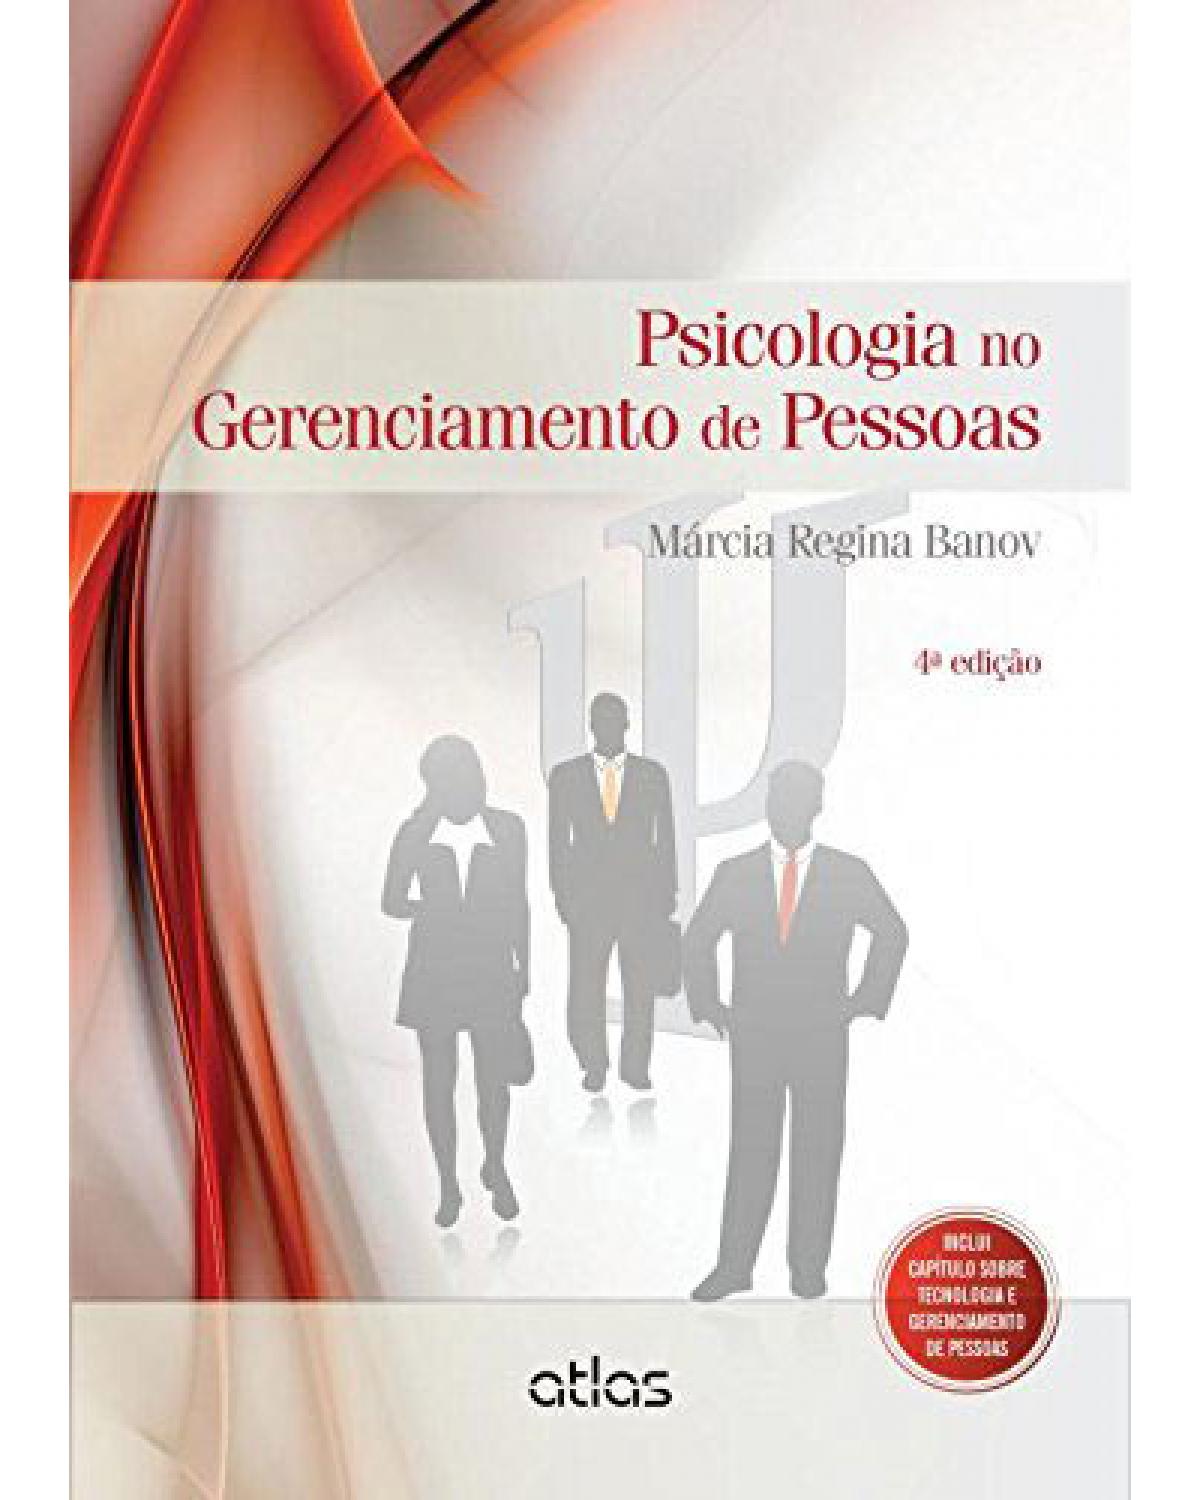 Psicologia no gerenciamento de pessoas - 4ª Edição | 2015